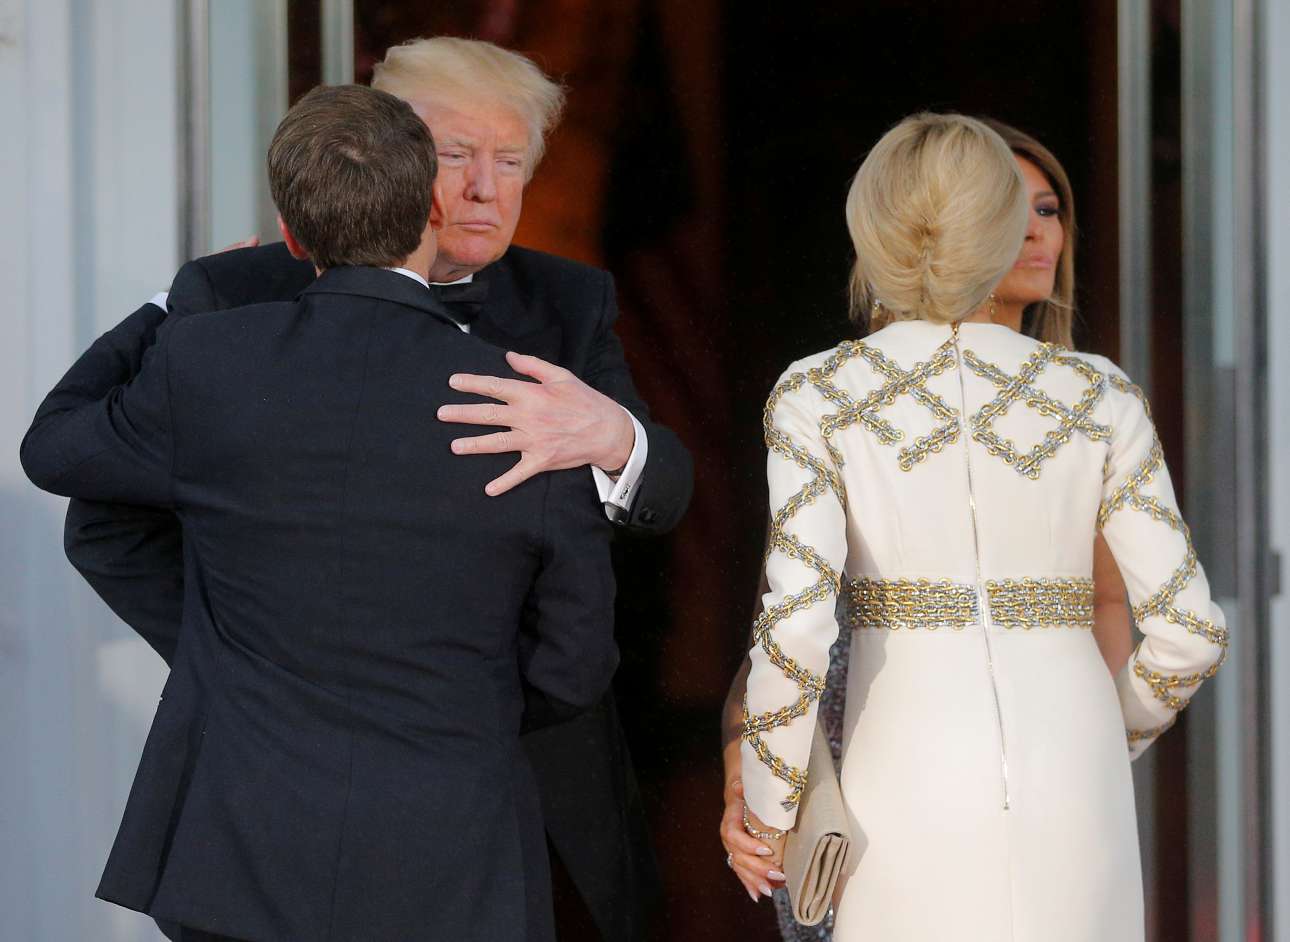 Ο Ντόναλντ Τραμπ καλωσορίζει τους Μακρόν ξανά στον Λευκό Οίκο, αυτή τη φορά για το επίσημο δείπνο το βράδυ της Τρίτης